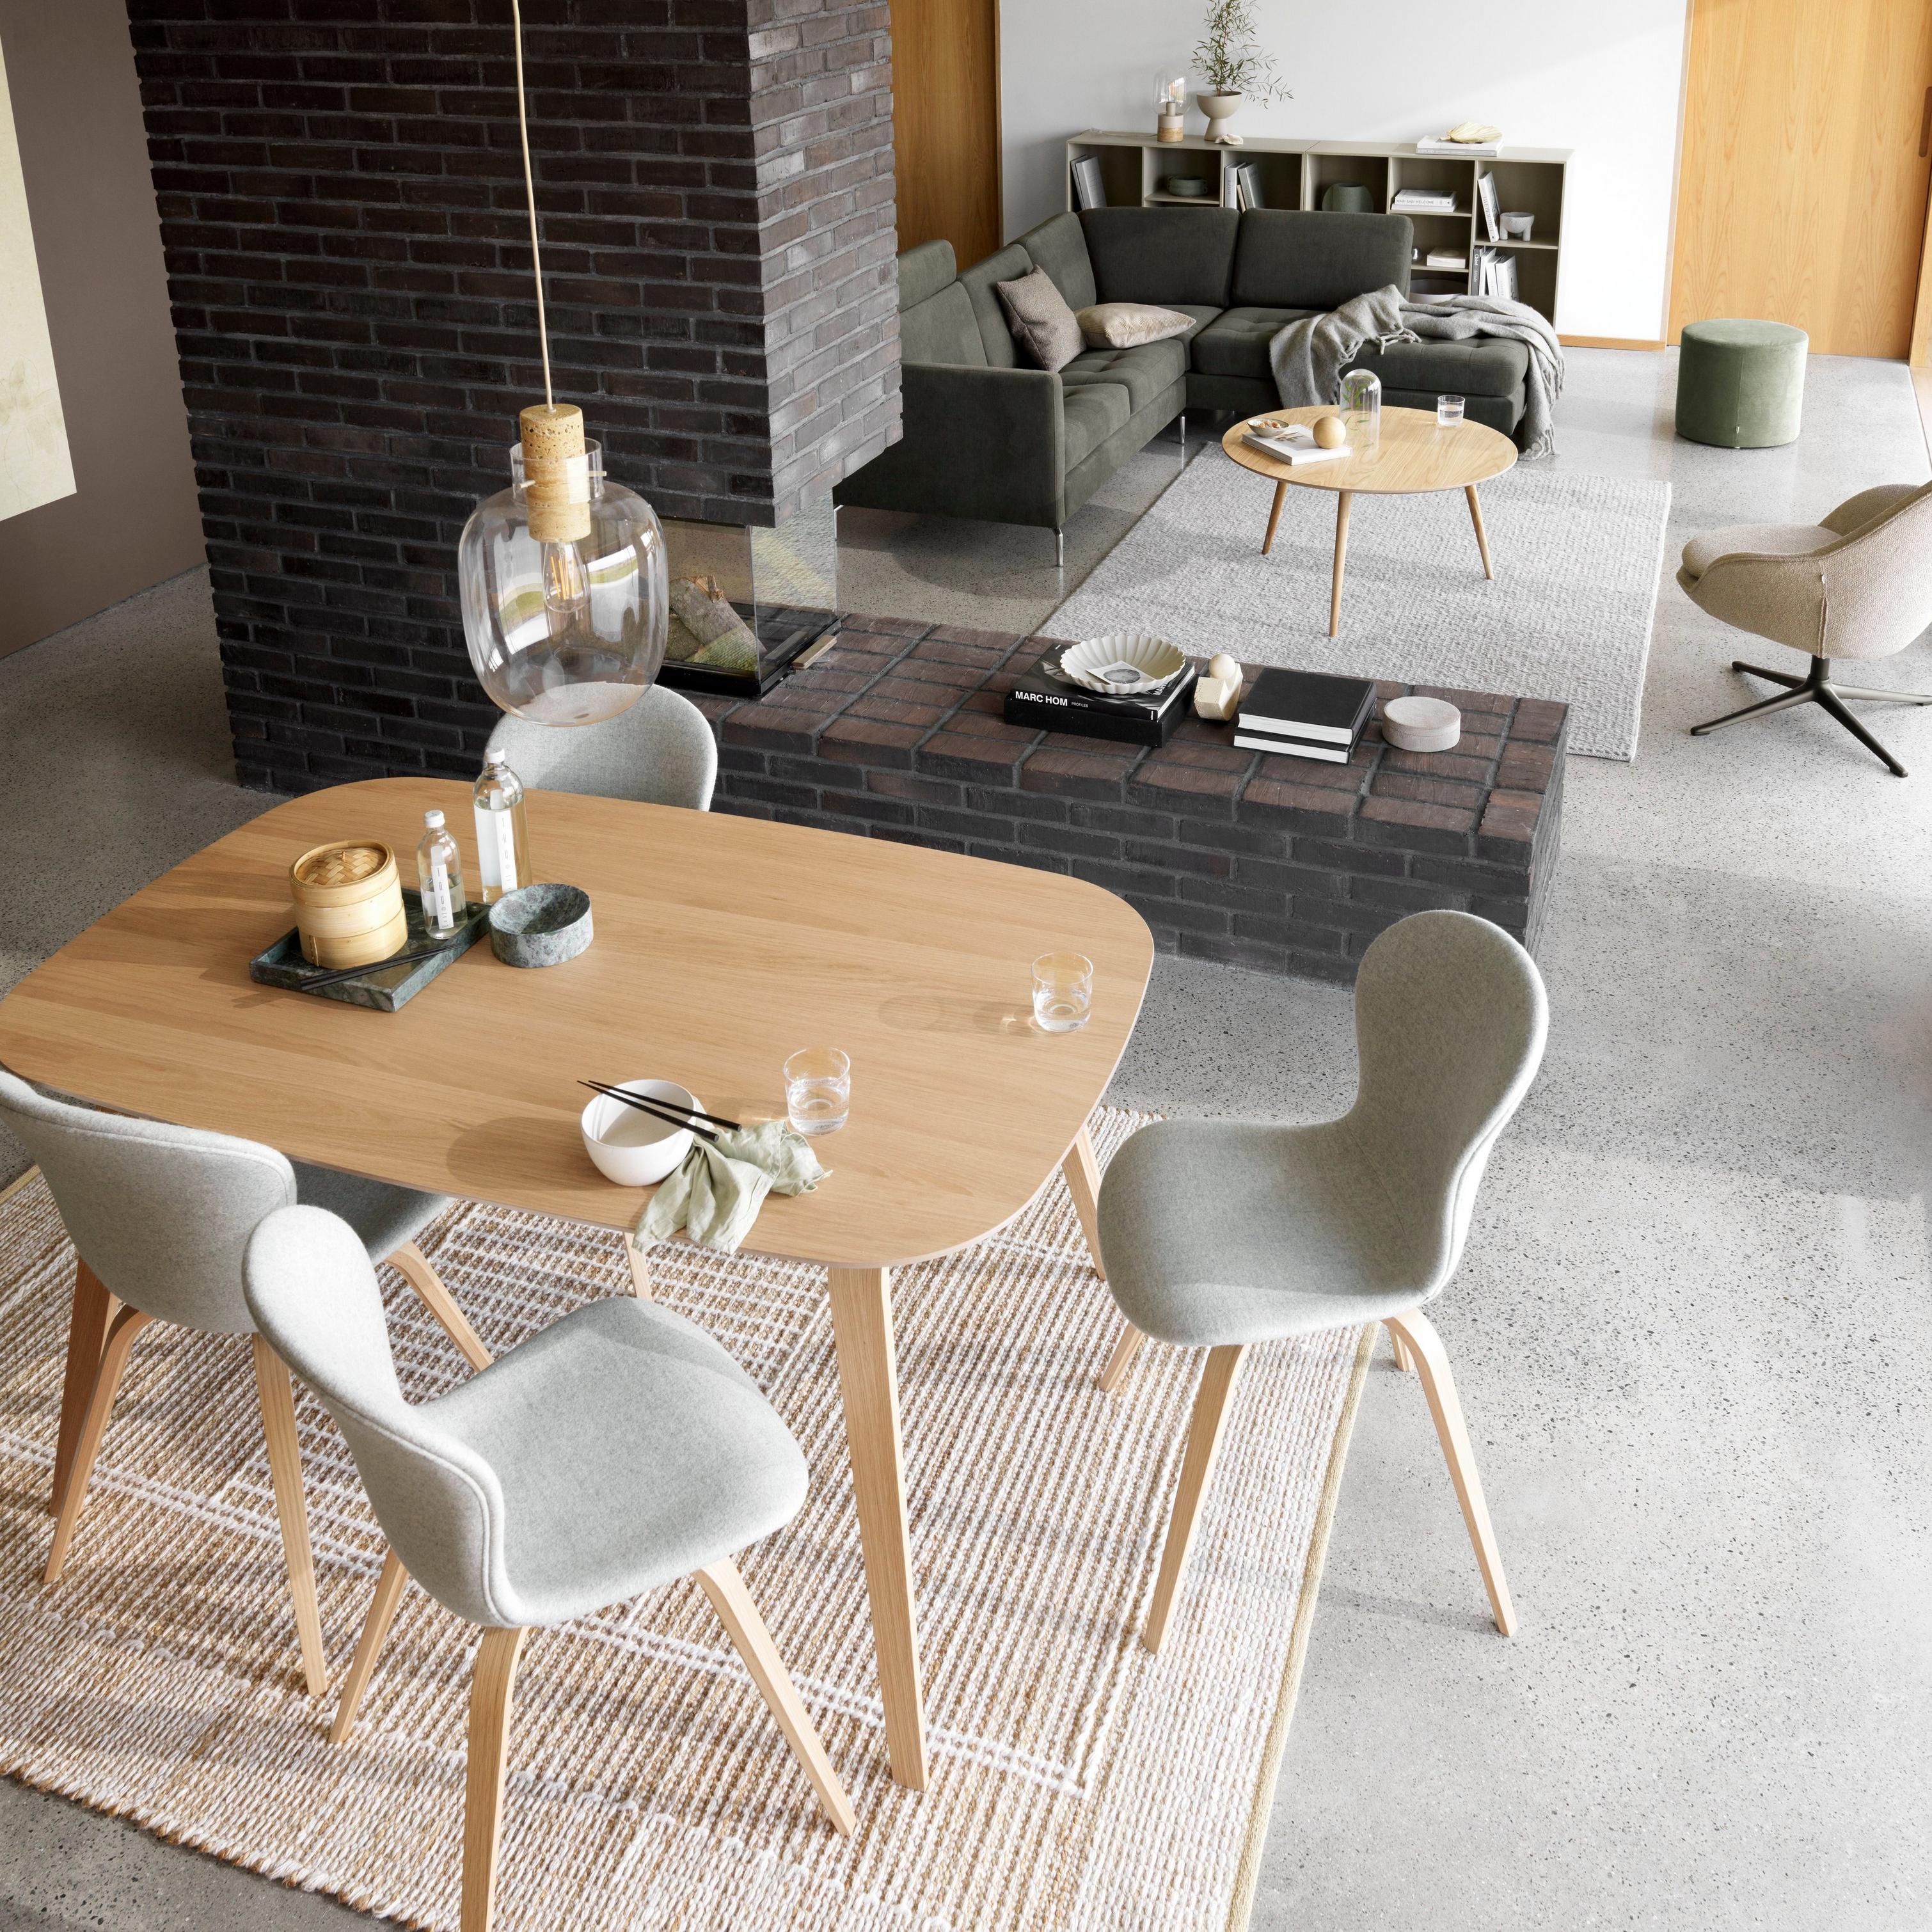 Adelaide チェア | デンマークデザインの家具 | ボーコンセプト